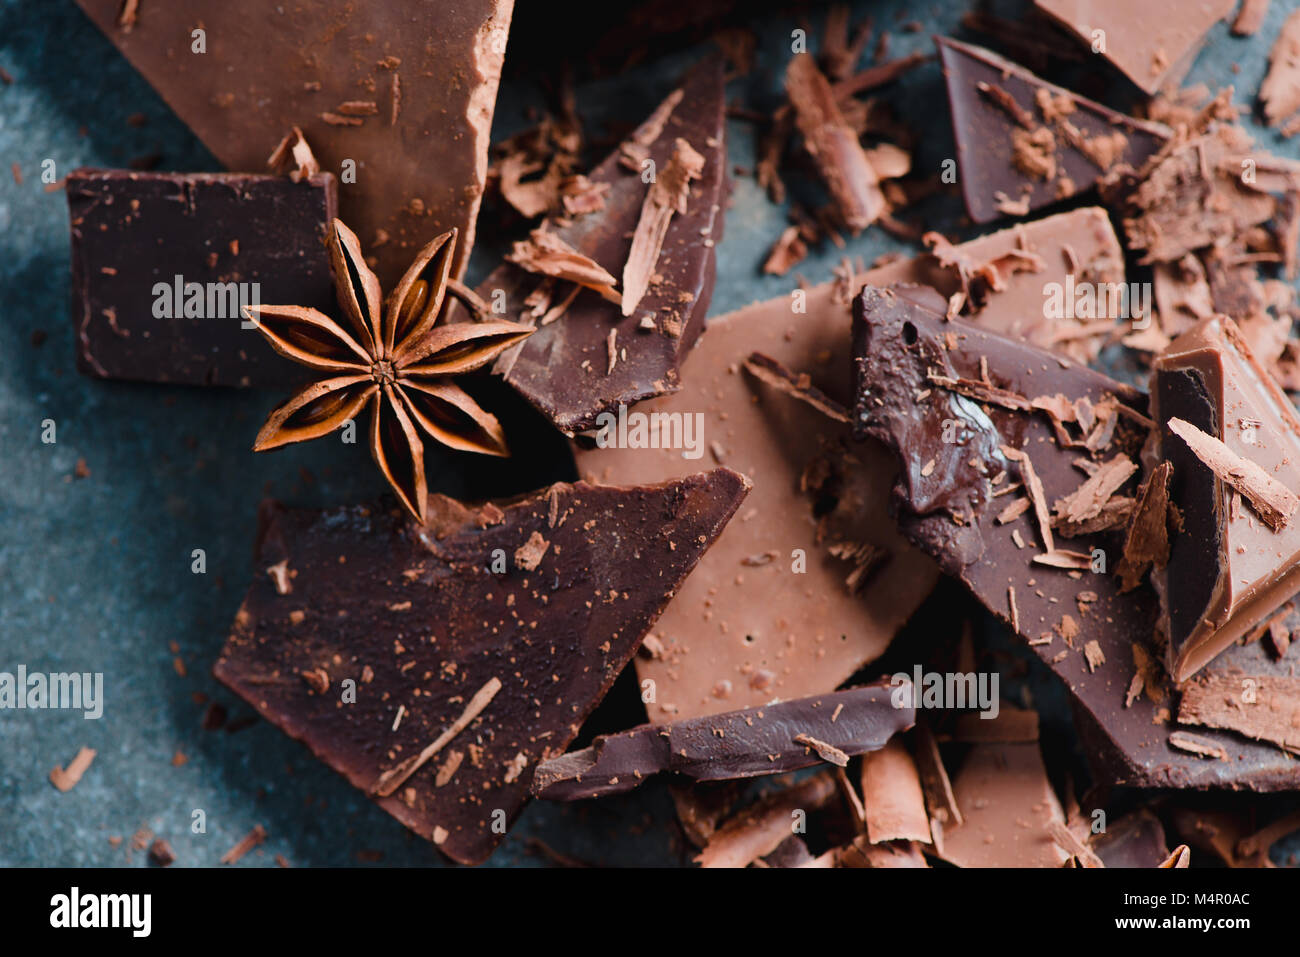 Schokolade mit Gewürzen und Kakao verstreut auf einem Stein. Süsswaren food Fotografie. Dessert Zutaten close-up. Stockfoto